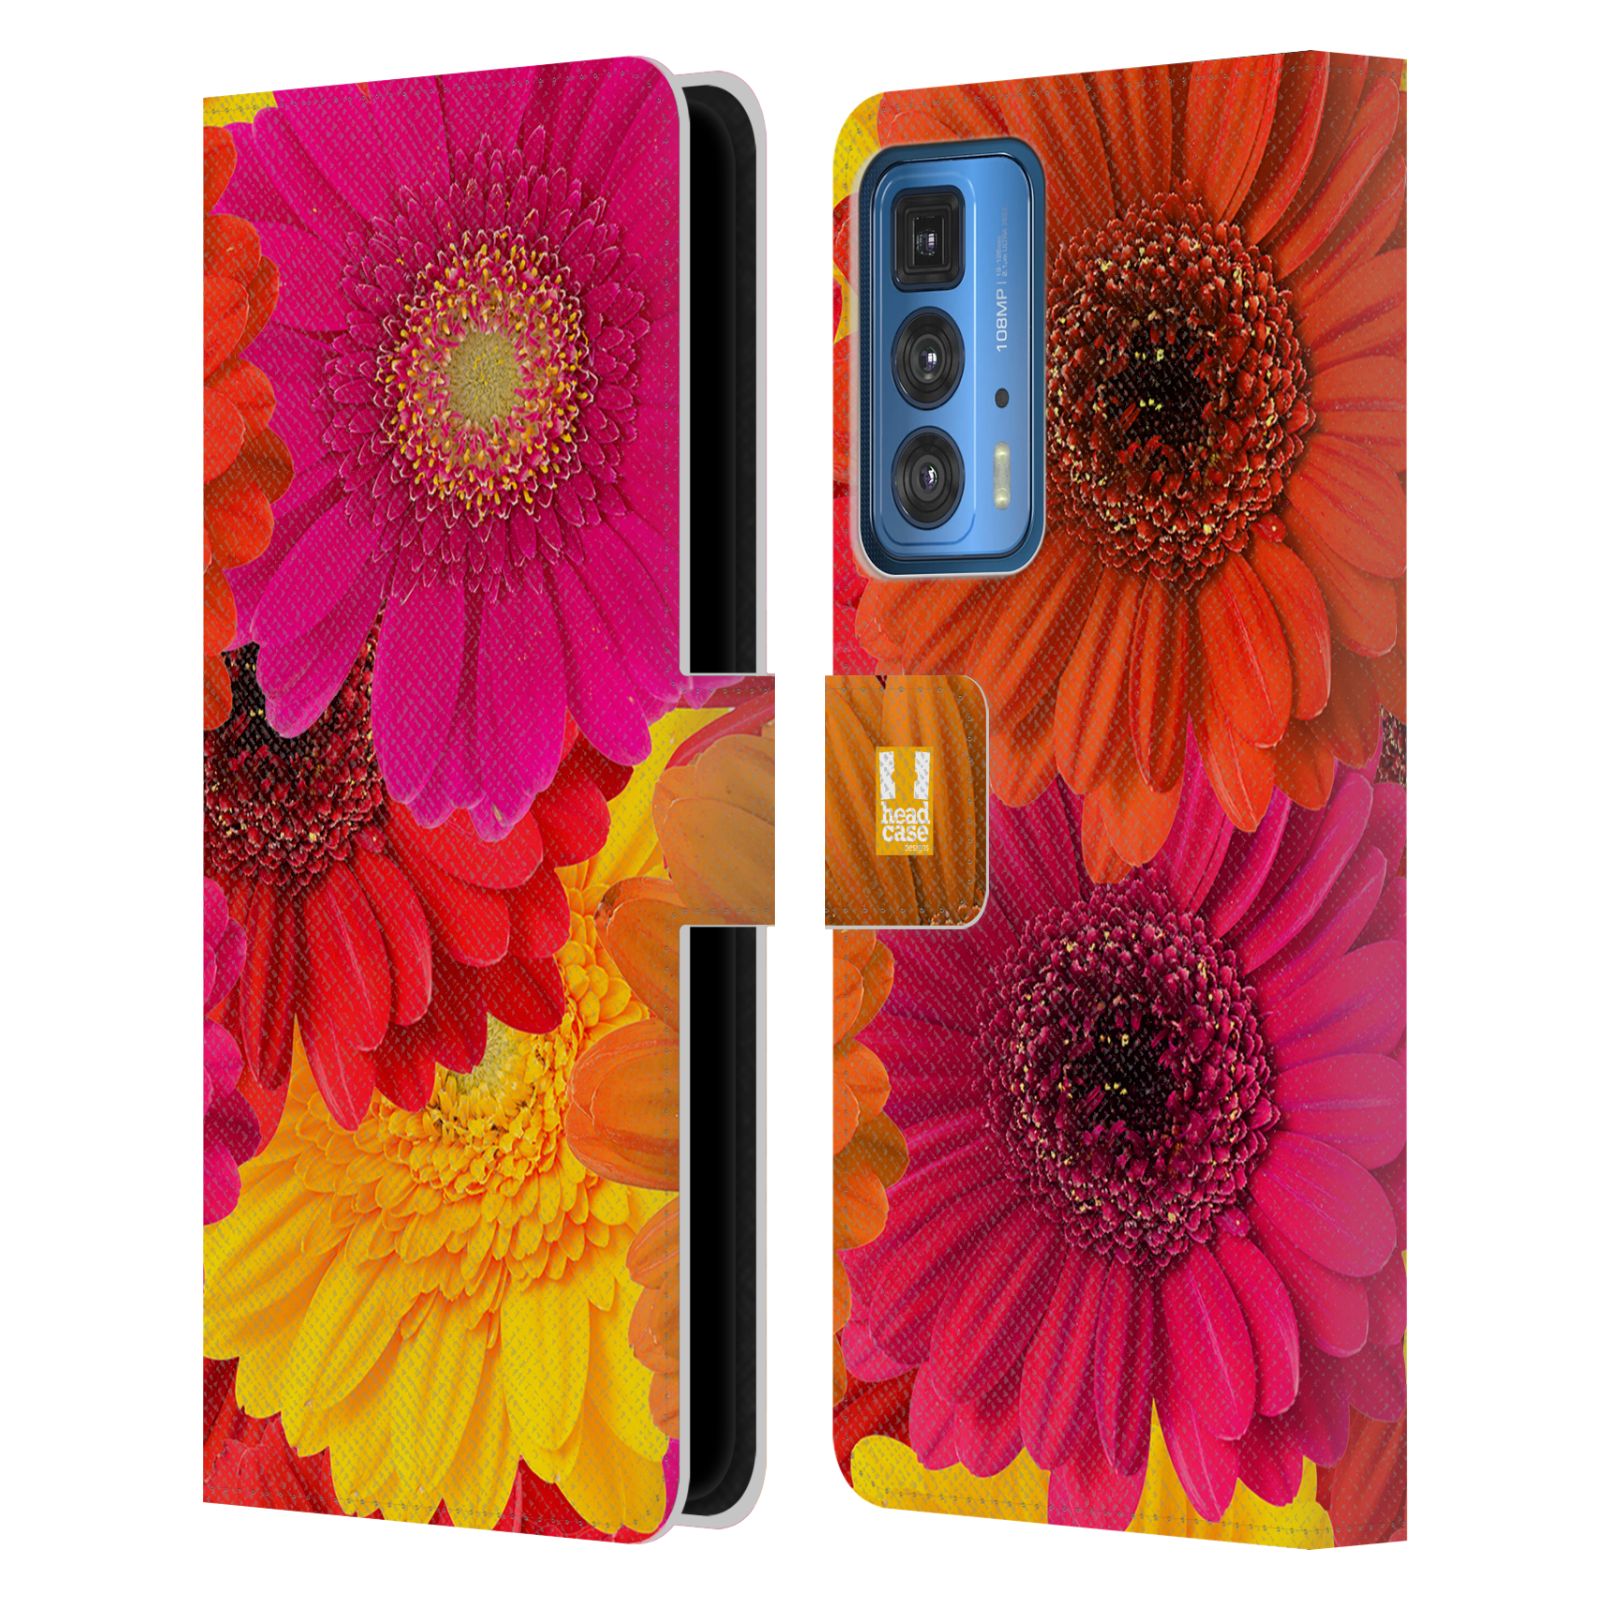 Pouzdro HEAD CASE na mobil Motorola EDGE 20 PRO květy foto fialová, oranžová GERBERA